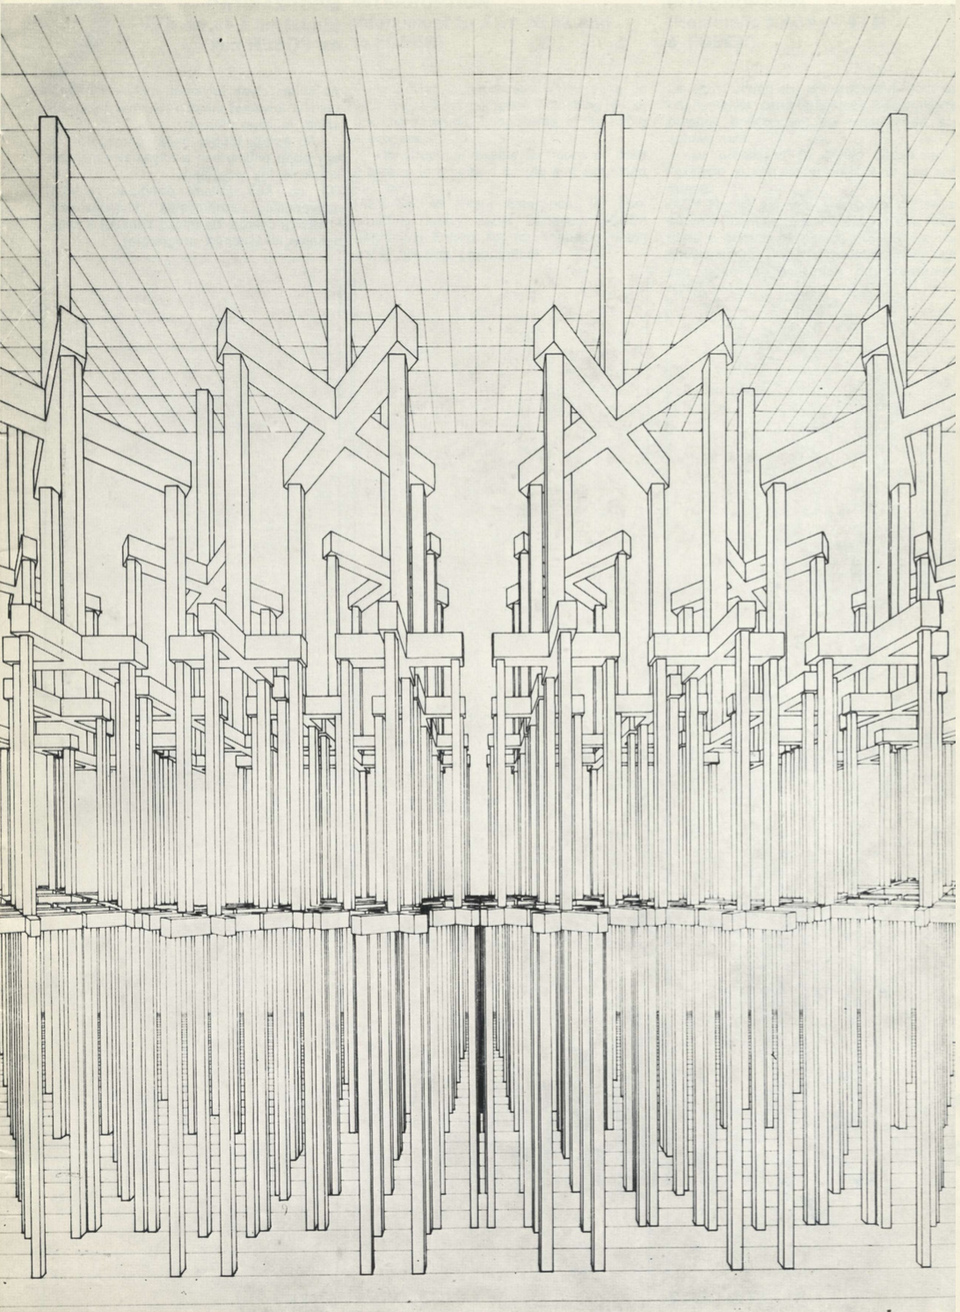 Továbbfejlesztés (Le Corbusier öröksége) – forrás: Rajk László: 5 terv, saját kiadású katalógus Beke László bevezetőjével, 1977